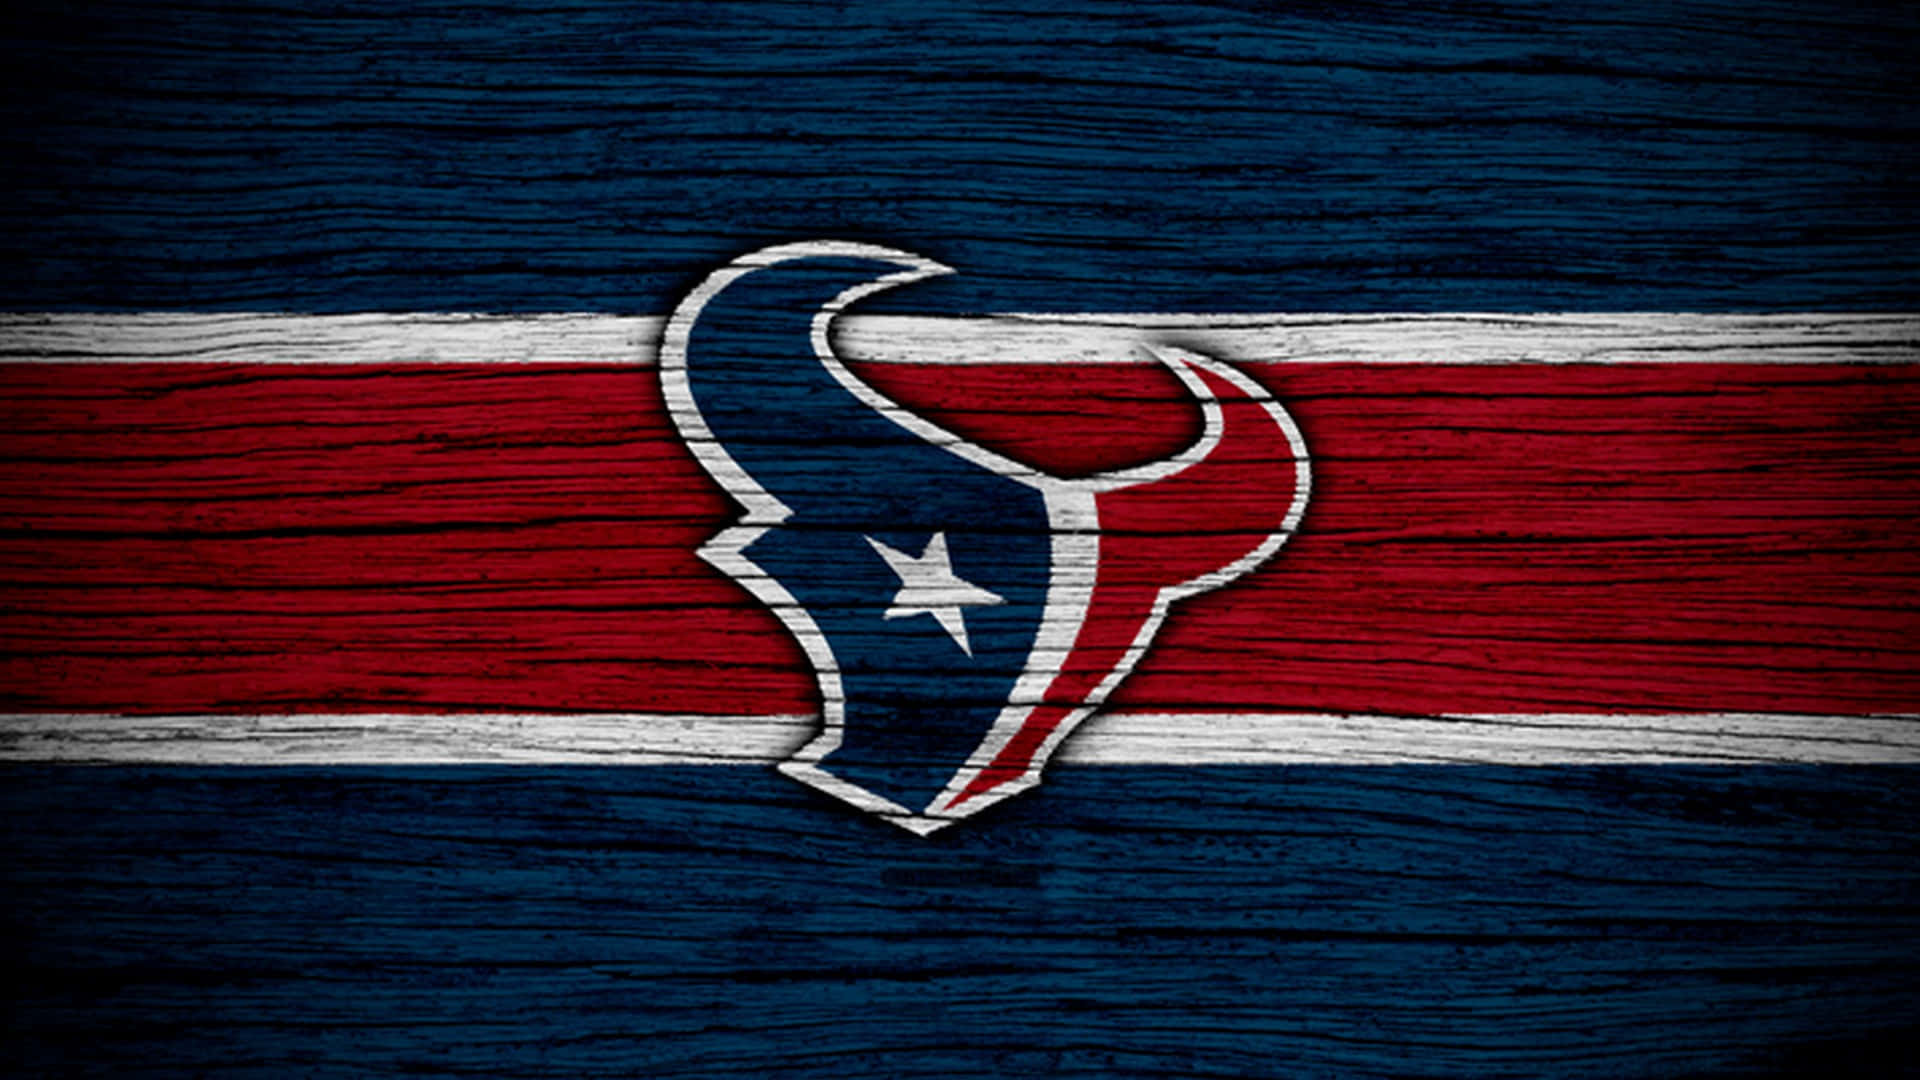 Houston Texans Logo Tapet: Vis din loyalitet til klubben og din stolthed med denne officielle Houston Texans-logotapet. Wallpaper